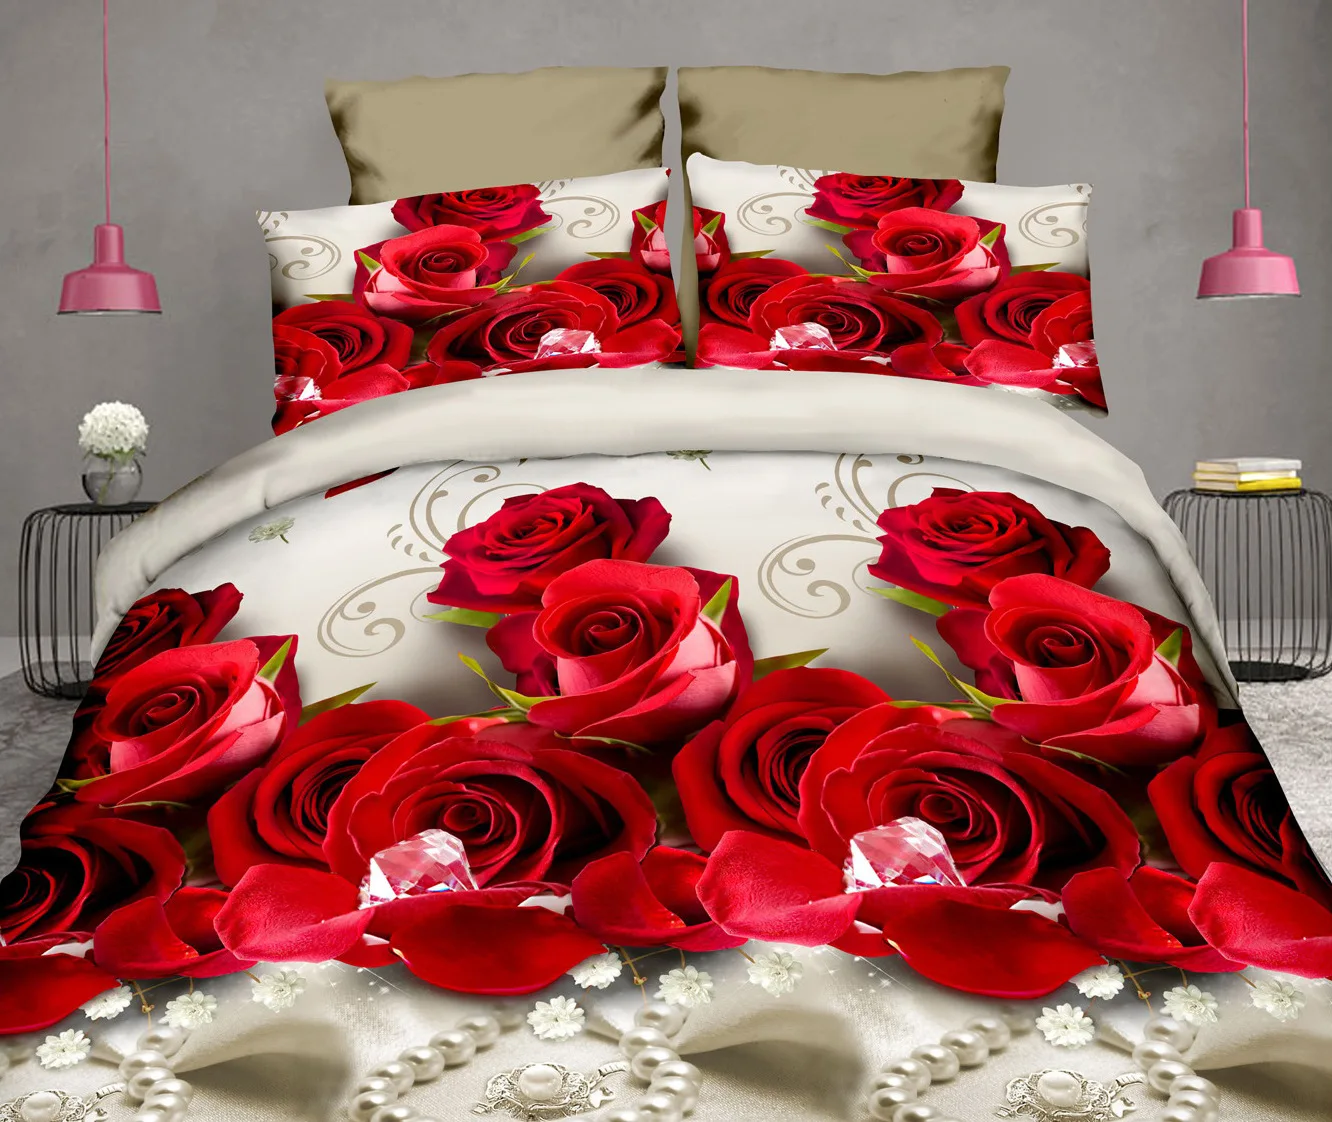 40 хлопок 3D роза постельных принадлежностей Высокое качество Мягкий Пододеяльник Простыня наволочка реактивной печати постельное белье Королева Постельное белье - Цвет: 7